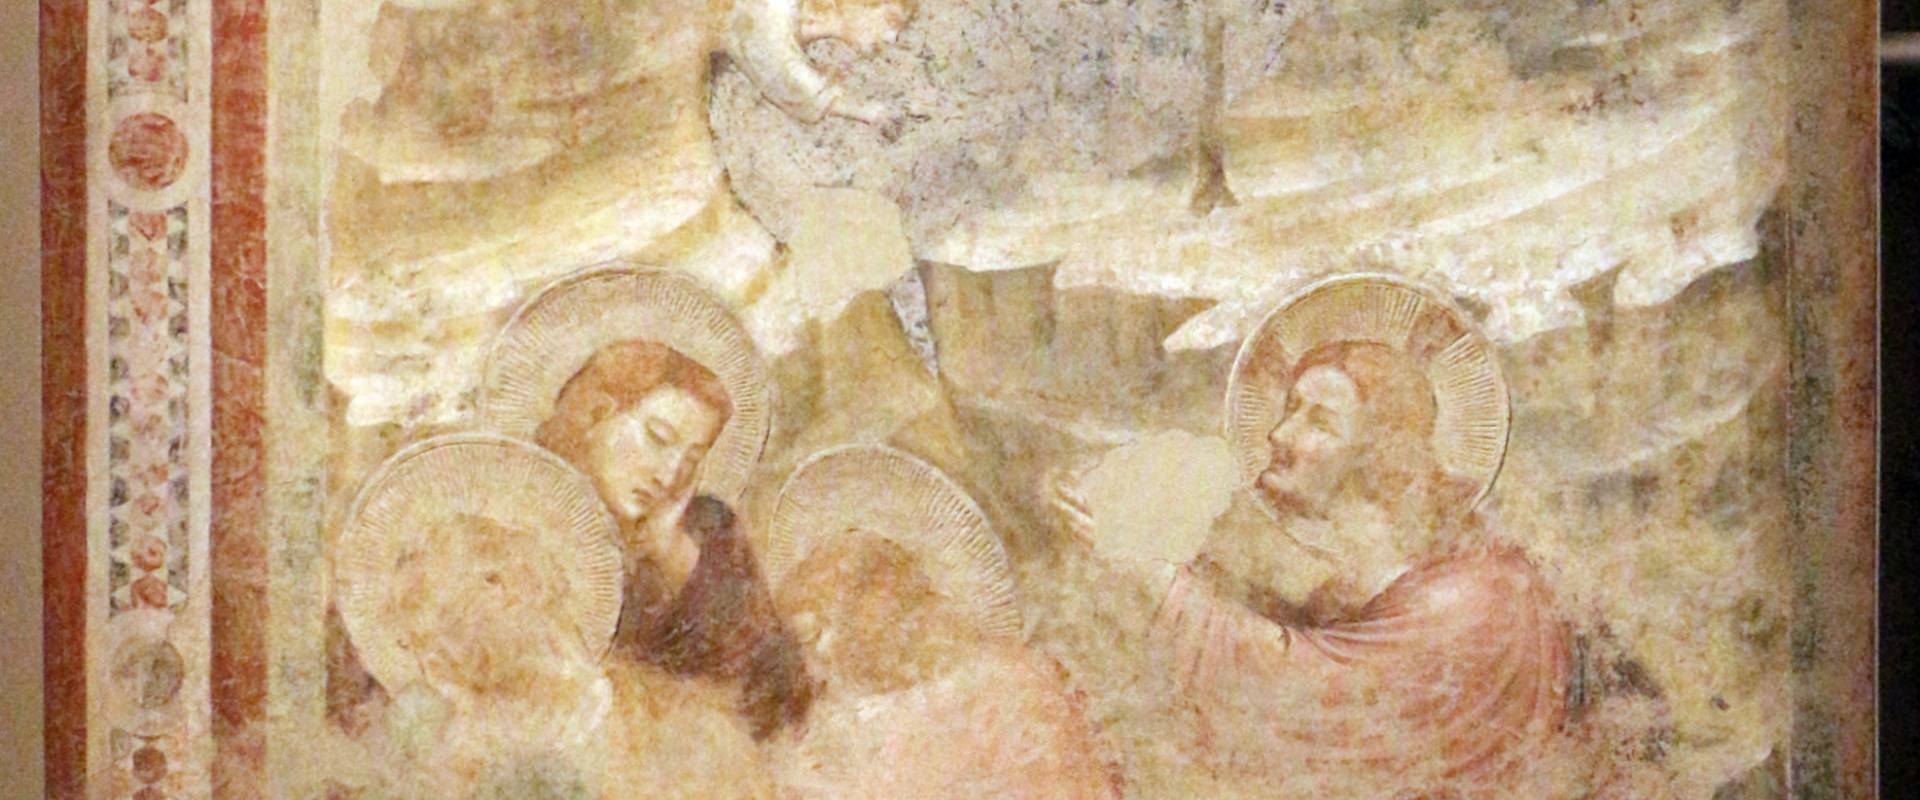 Pietro da rimini e bottega, affreschi dalla chiesa di s. chiara a ravenna, 1310-20 ca., orazione nell'orto photo by Sailko